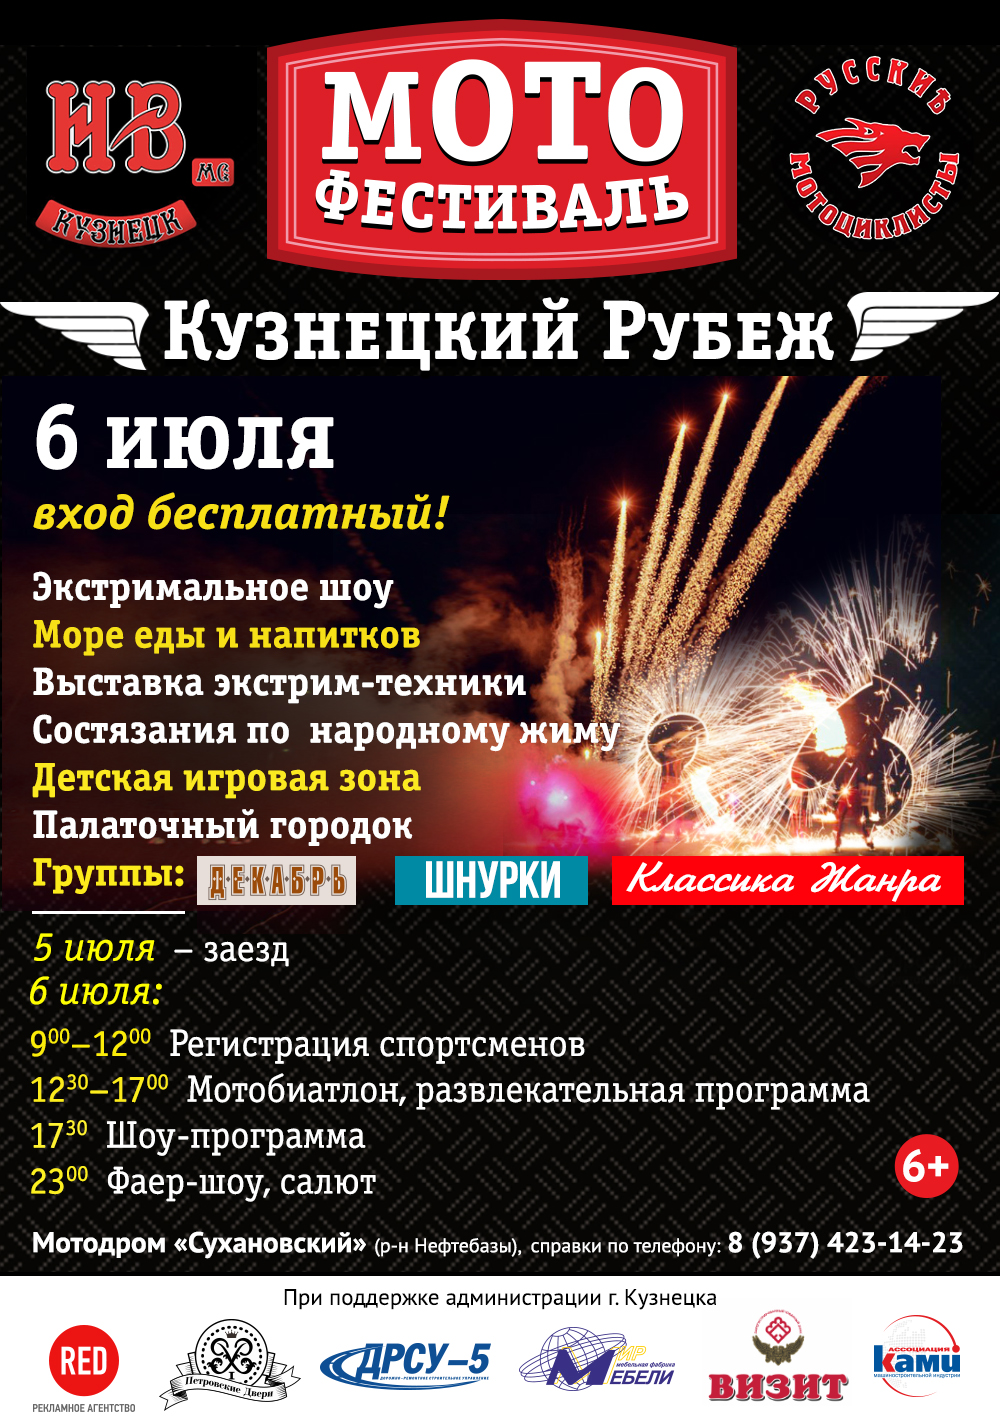 6 июля на мотодроме «Сухановский» состоится мотофестиваль «Кузнецкий рубеж»